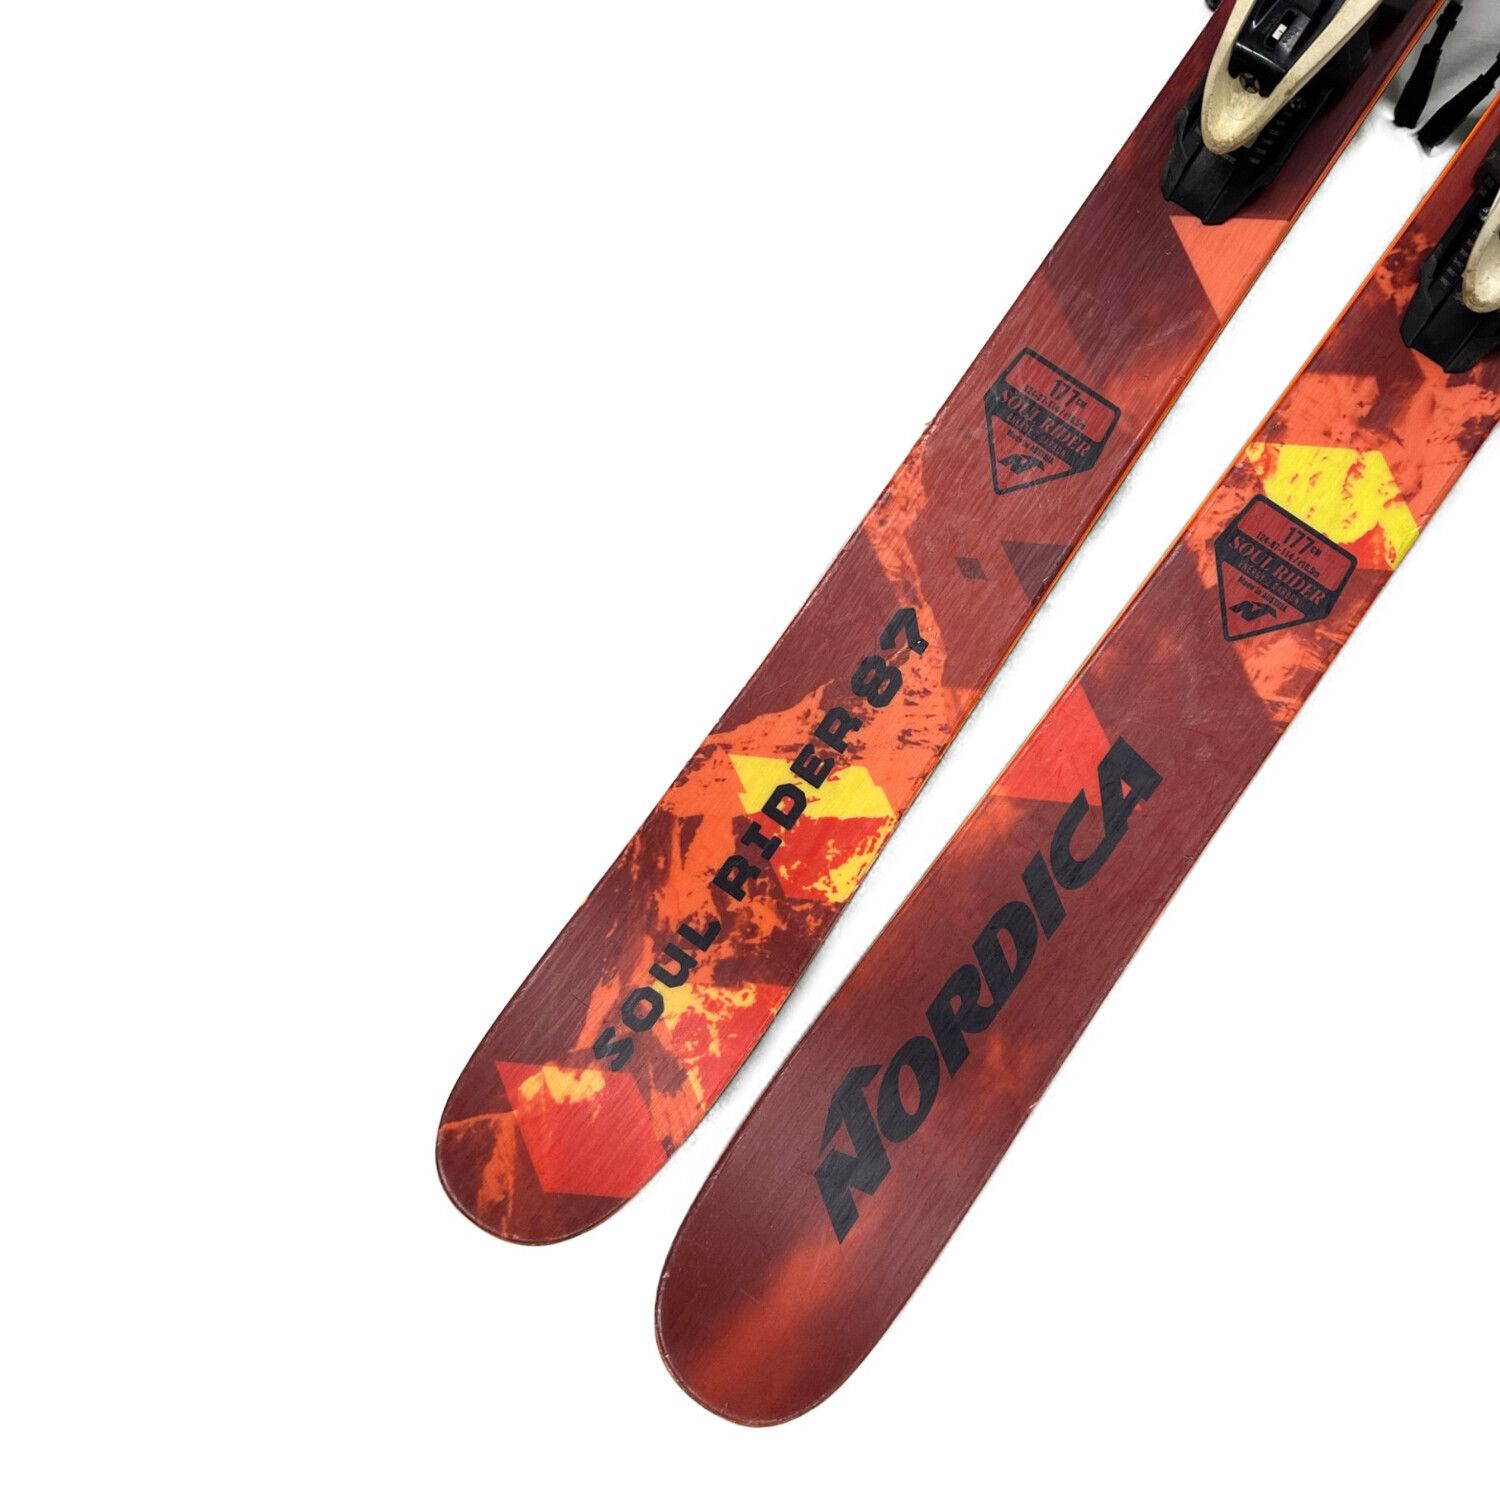 メンテ済 スキー NORDICA Soul Rider 169cm スキー板 - スキー